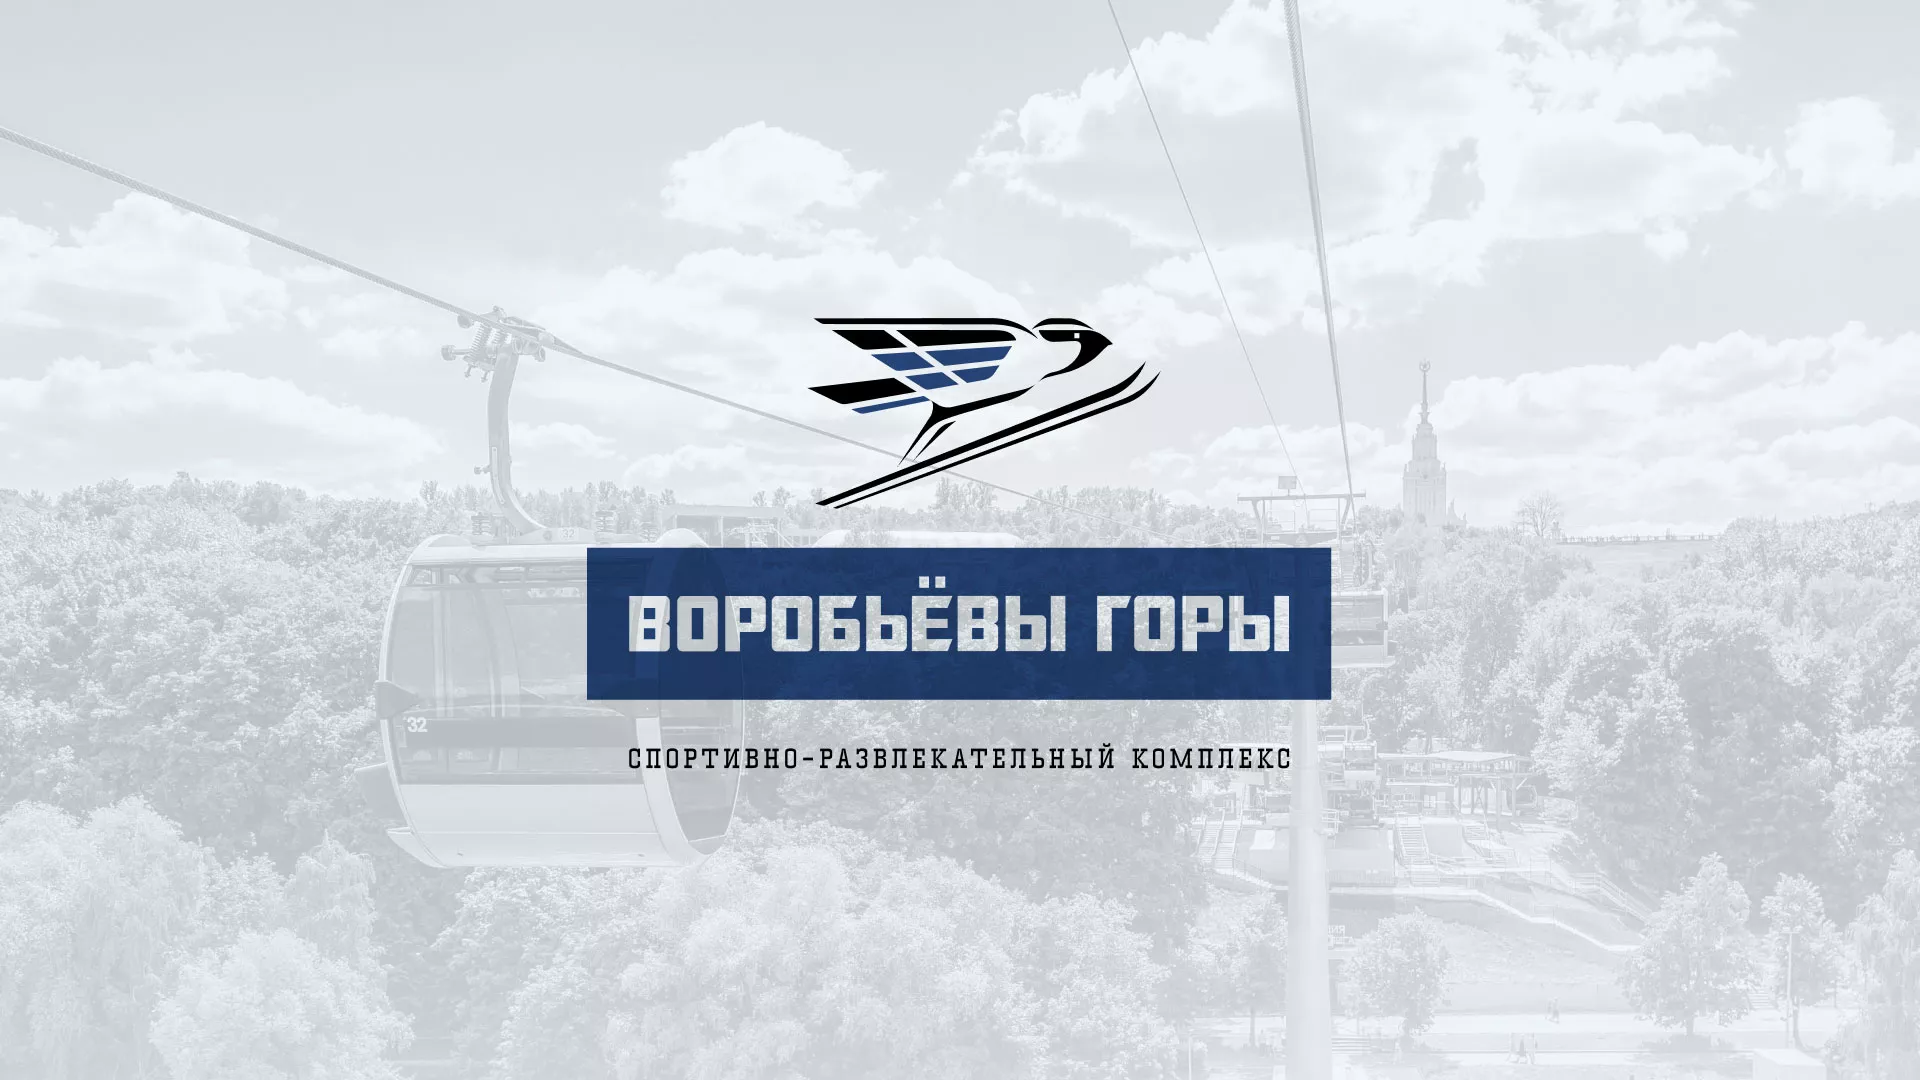 Разработка сайта в Воронеже для спортивно-развлекательного комплекса «Воробьёвы горы»